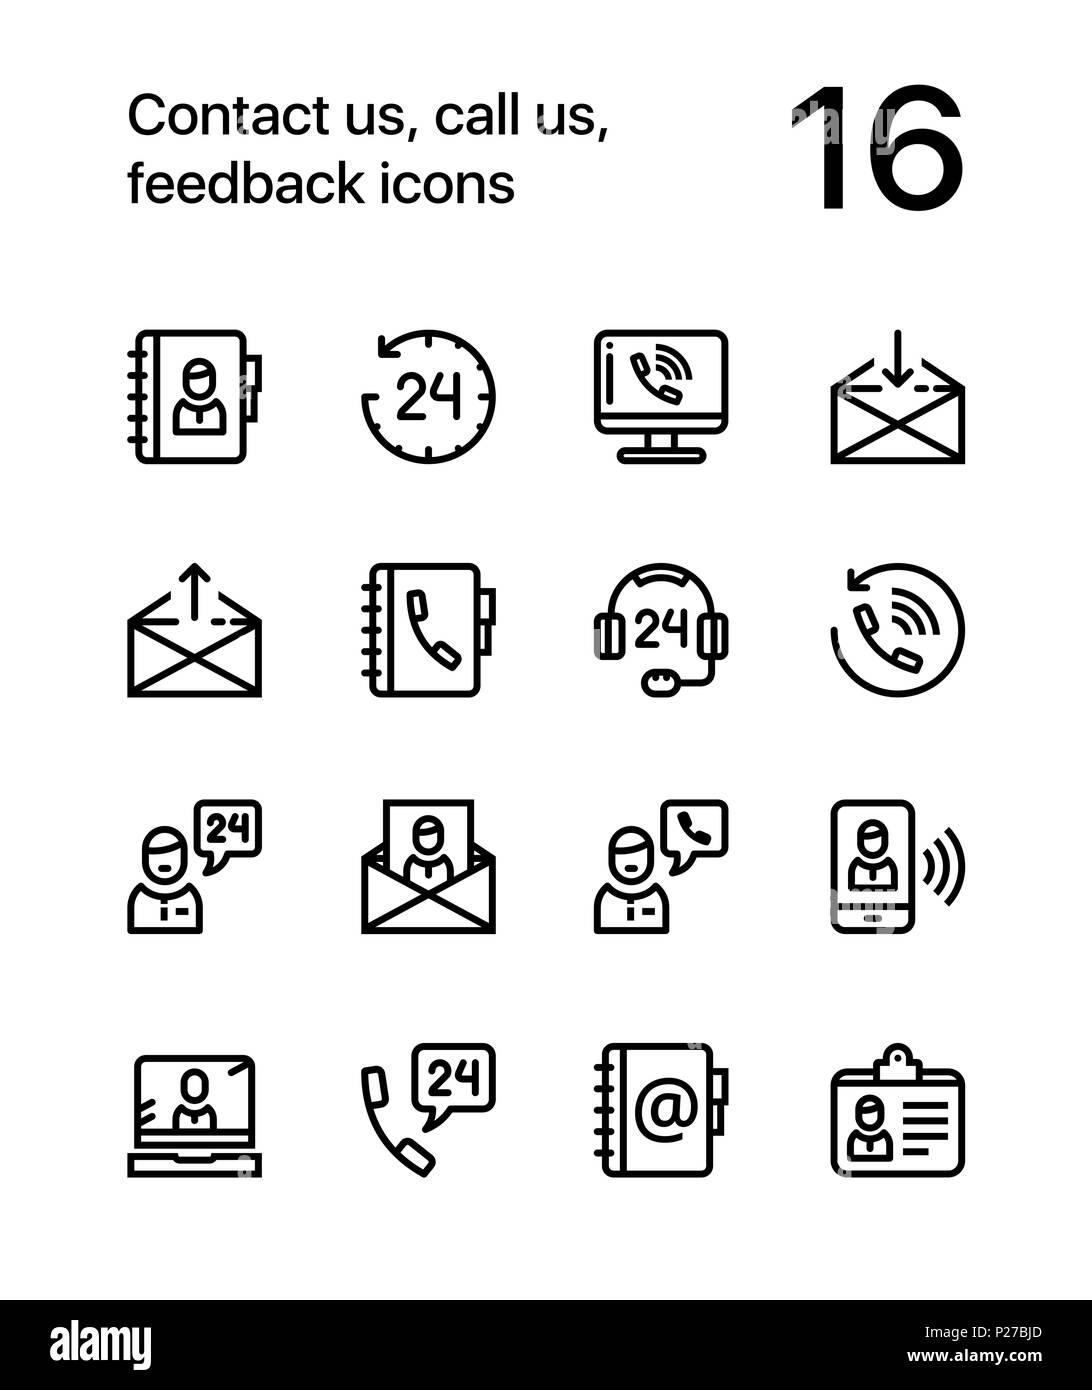 Kontaktieren Sie uns, rufen Sie uns an, feedback Symbole für Web und mobile Design Pack 1 Stock Vektor